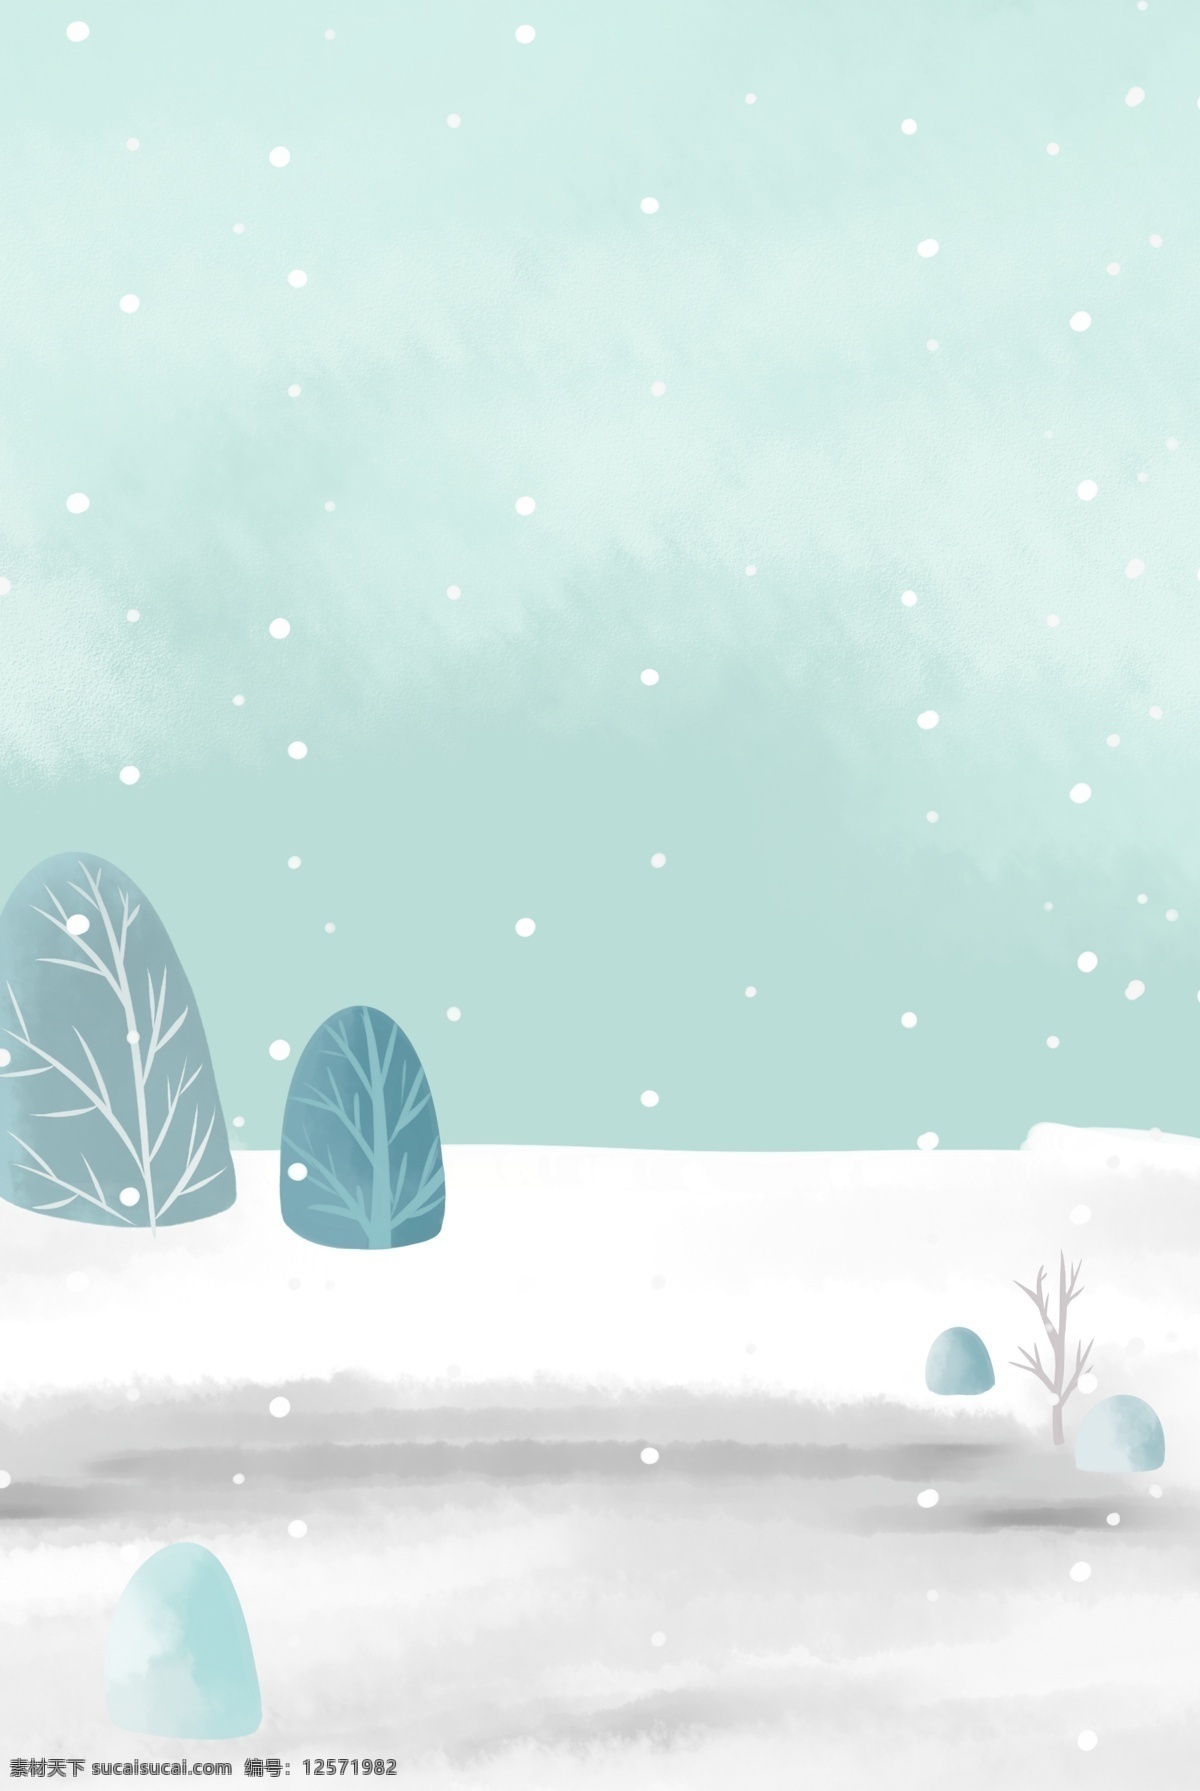 大寒 二十四节气 分层 banner 冬天 雪花 农历节气 冬天的树 雪地 创意合成